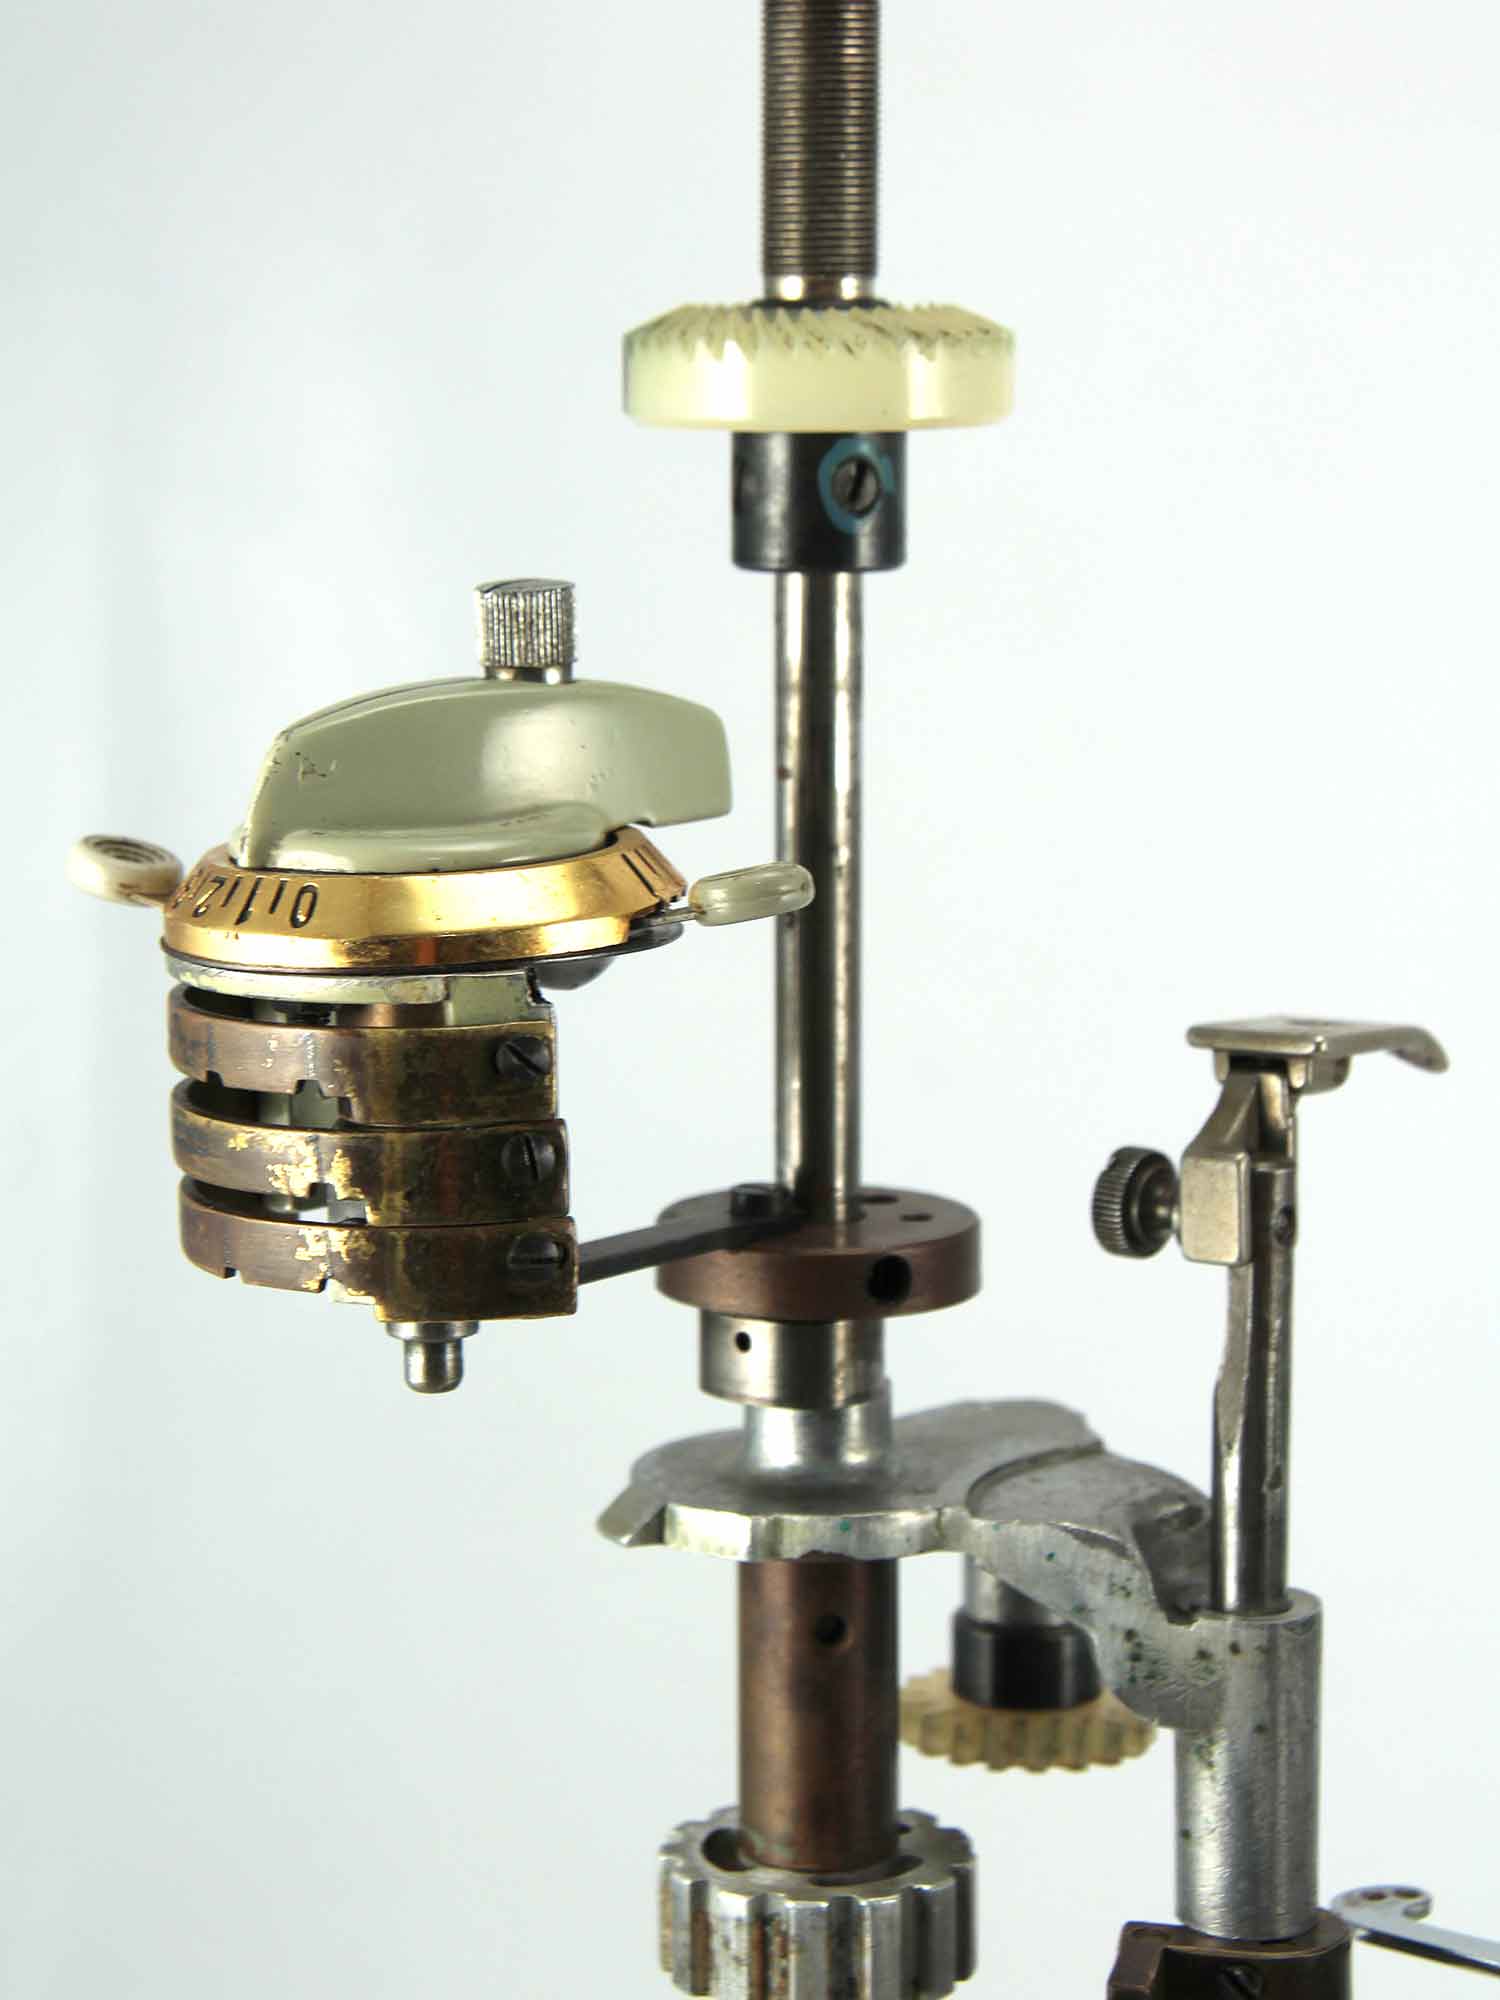 Escultura d'una interpretació de màquina de cosir Sigma 31017